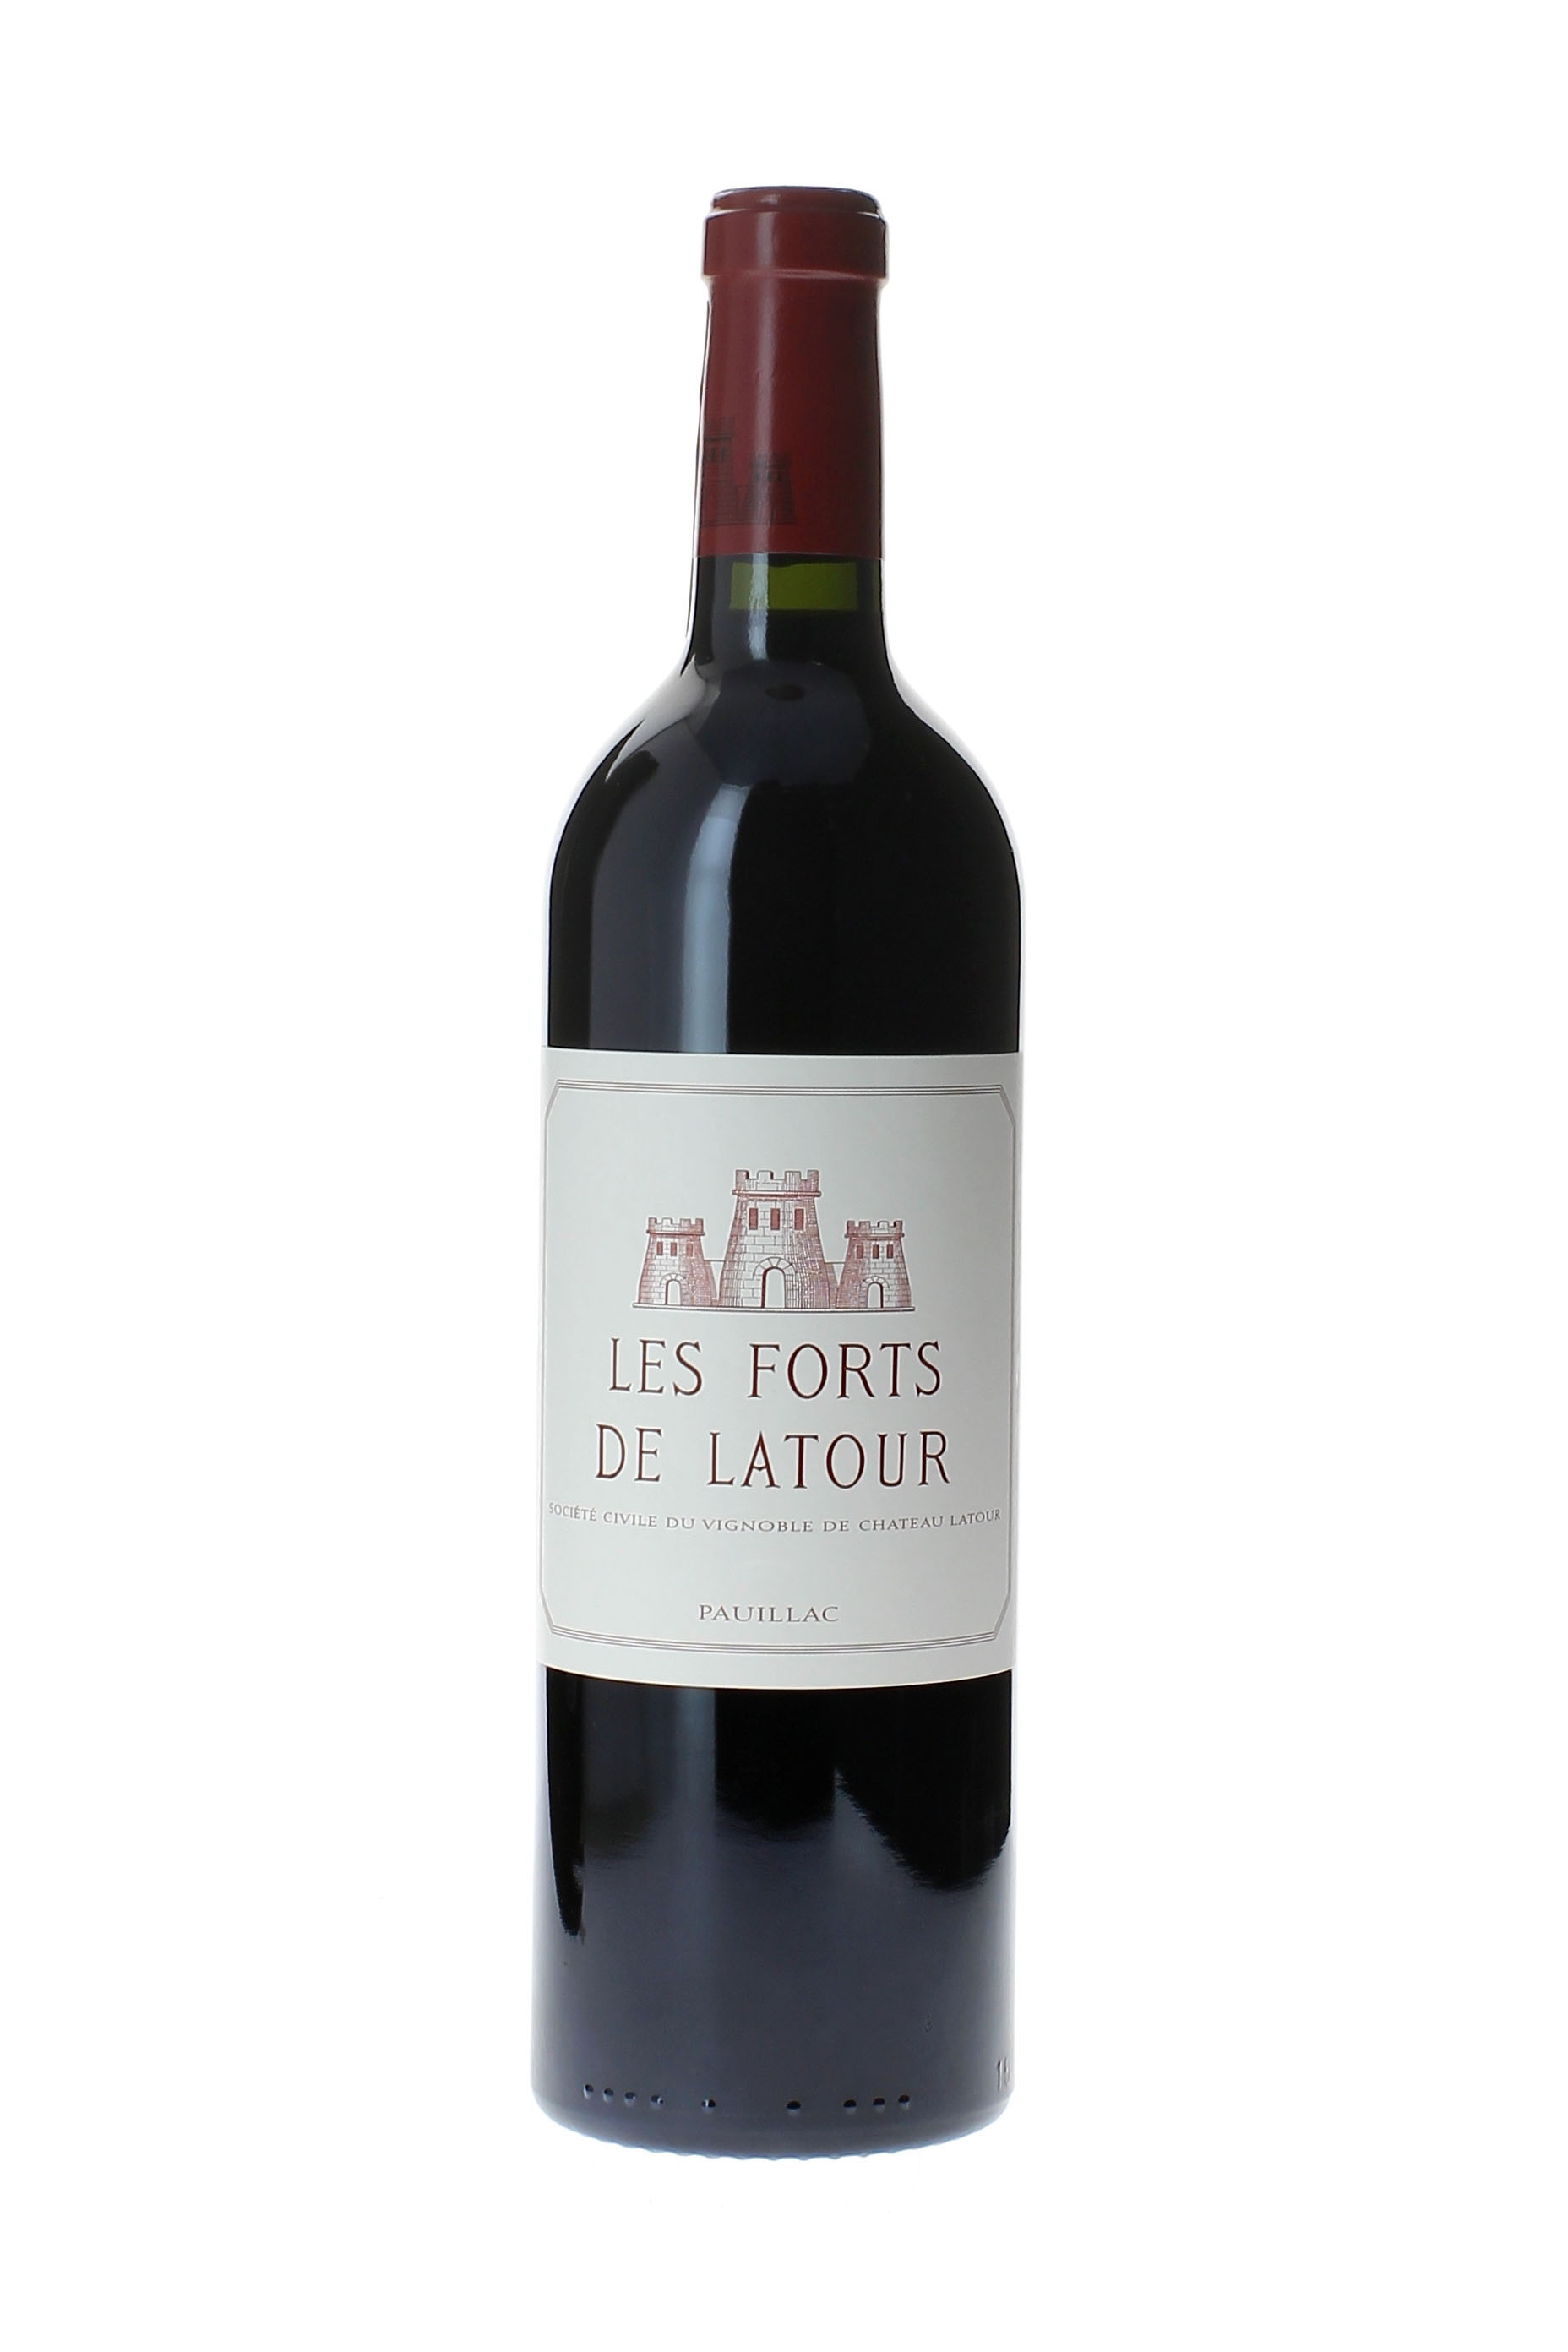 Forts de latour 2004 2me vin de LATOUR Pauillac, Bordeaux rouge